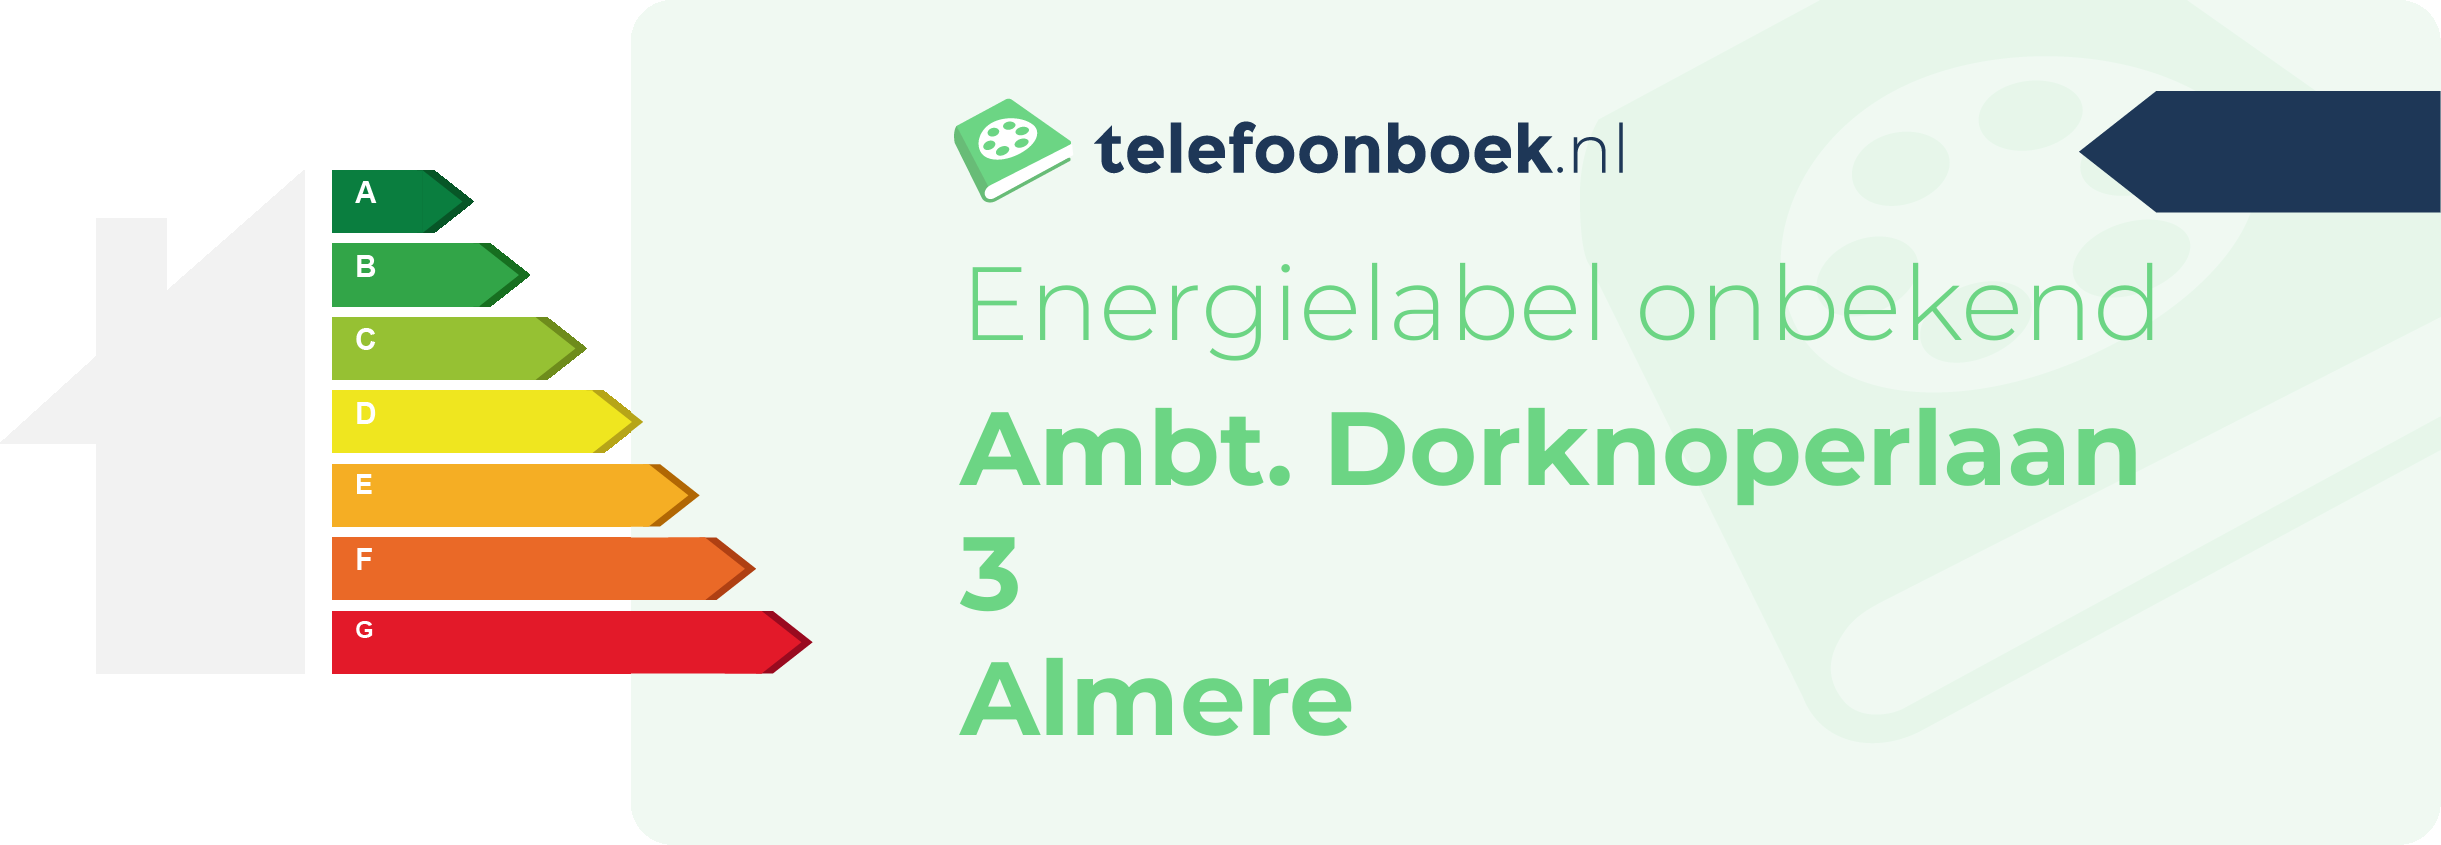 Energielabel Ambt. Dorknoperlaan 3 Almere